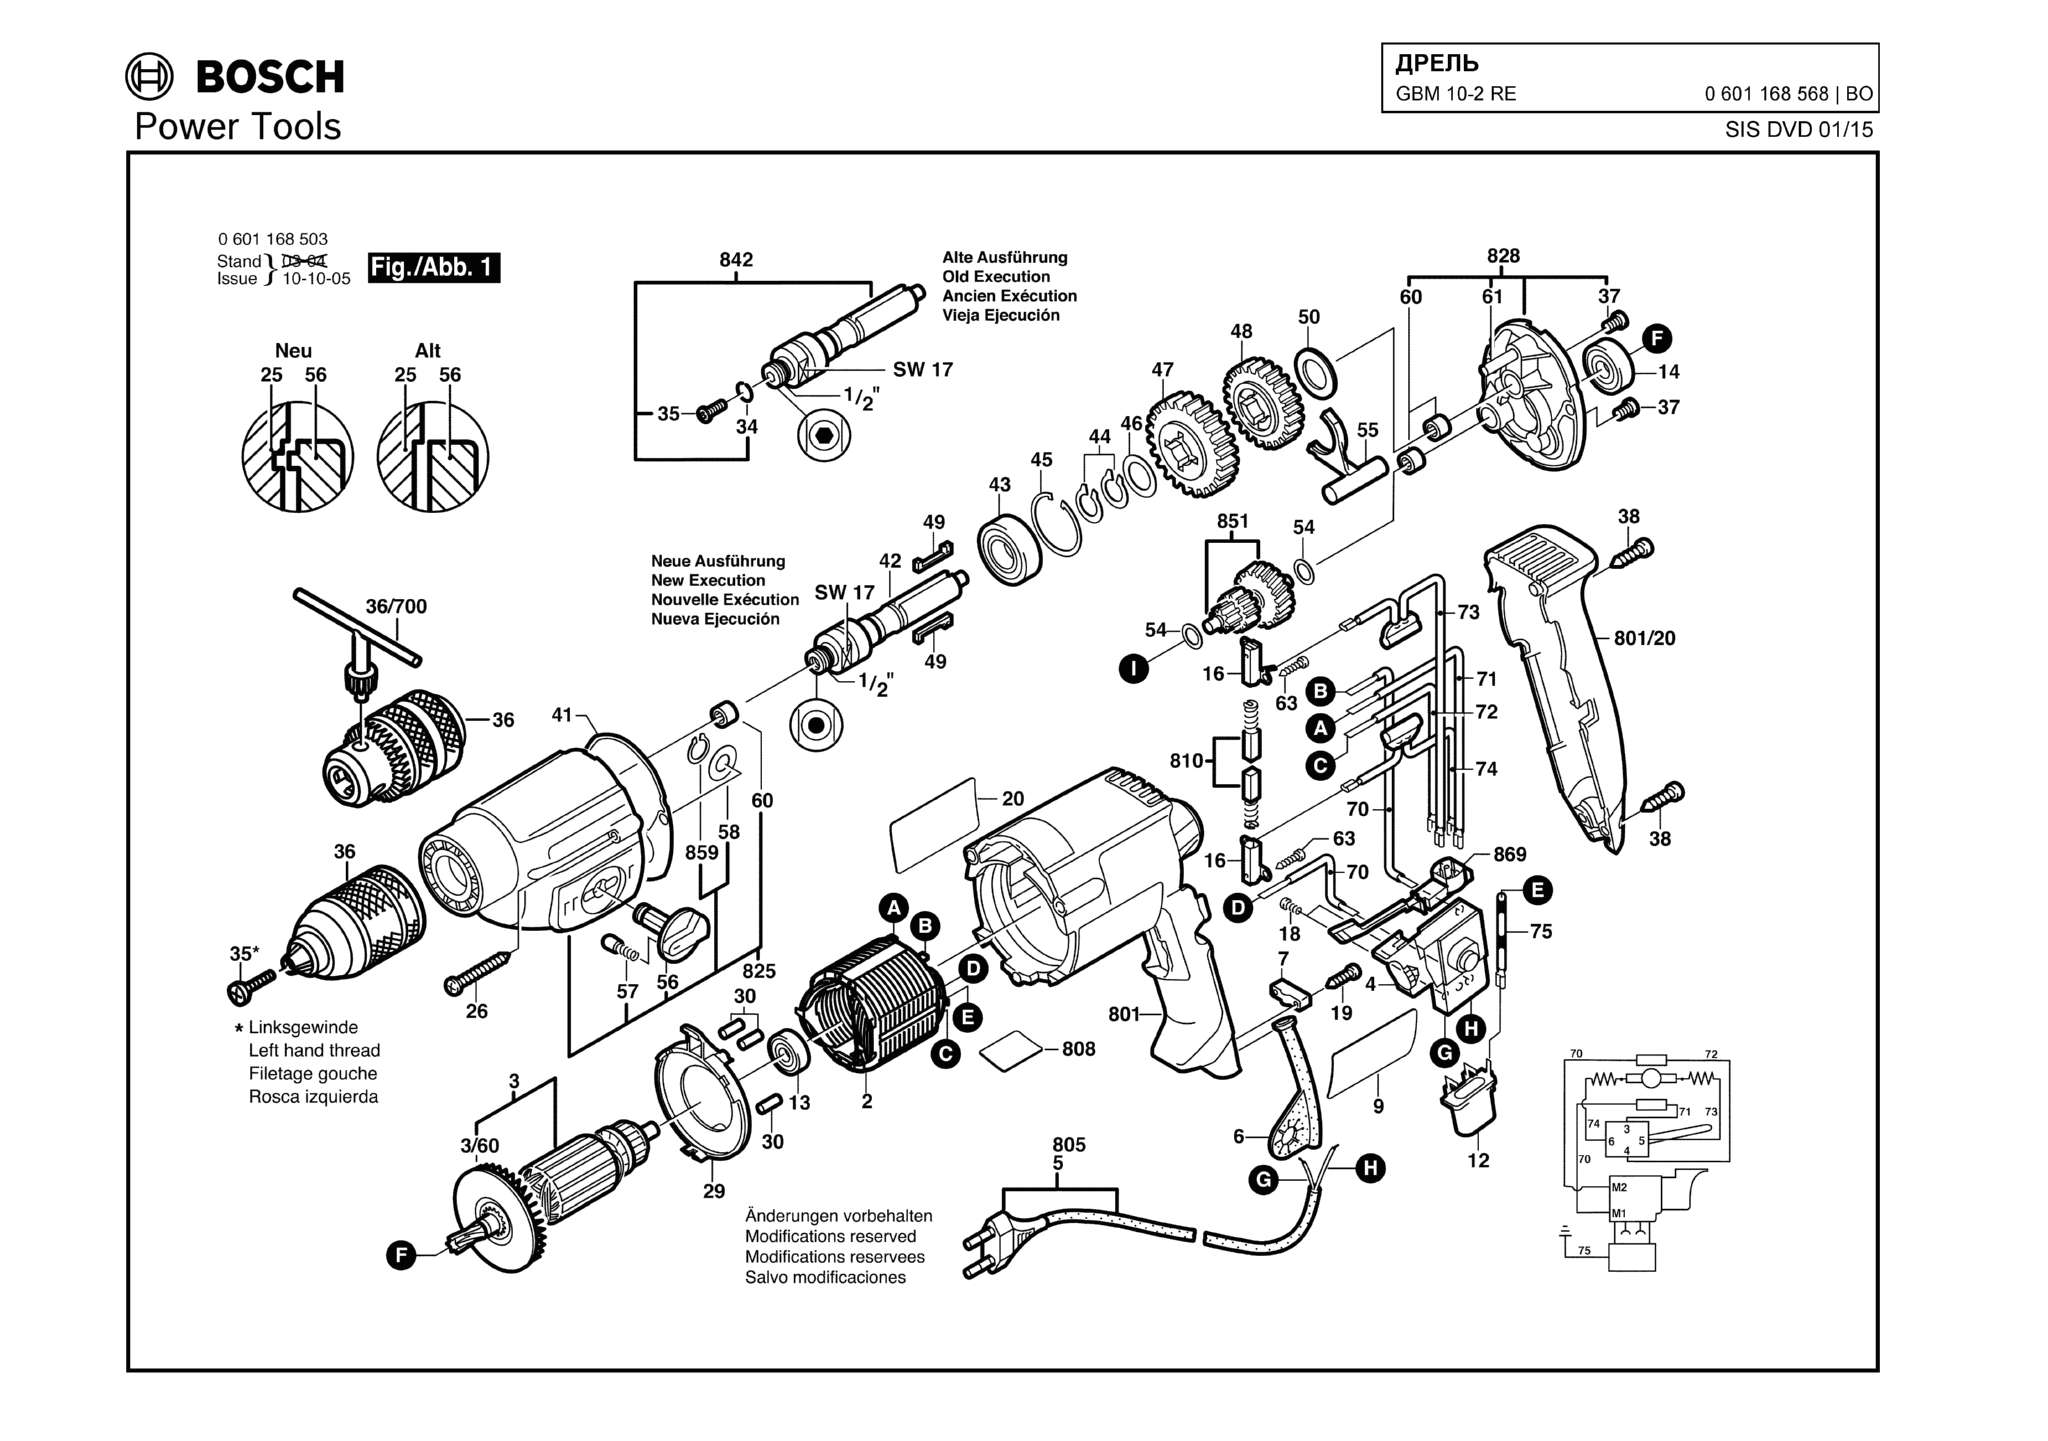 Запчасти, схема и деталировка Bosch GBM 10-2 RE (ТИП 0601168568)